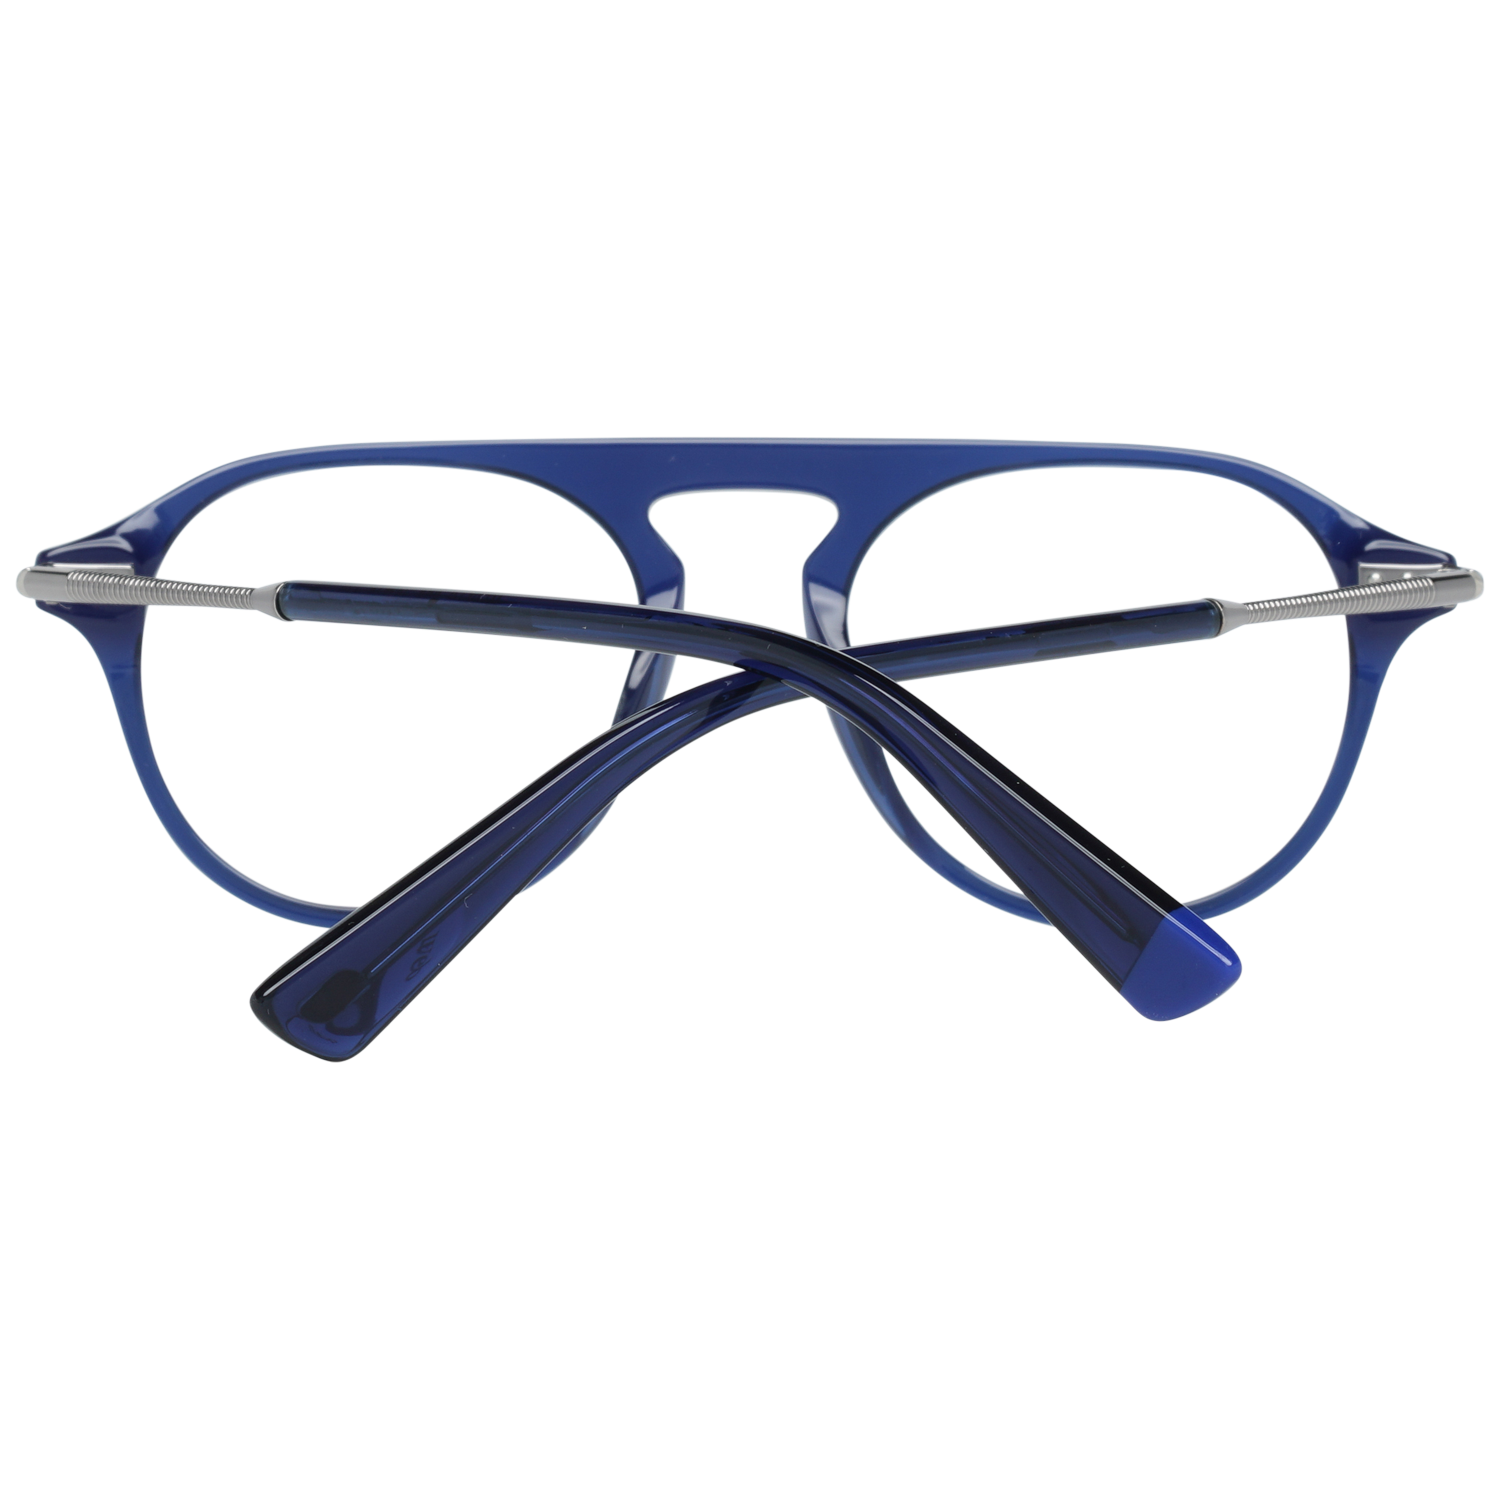 Web Frames Web Glasses Optical Frame WE5278 090 49 Eyeglasses Eyewear UK USA Australia 